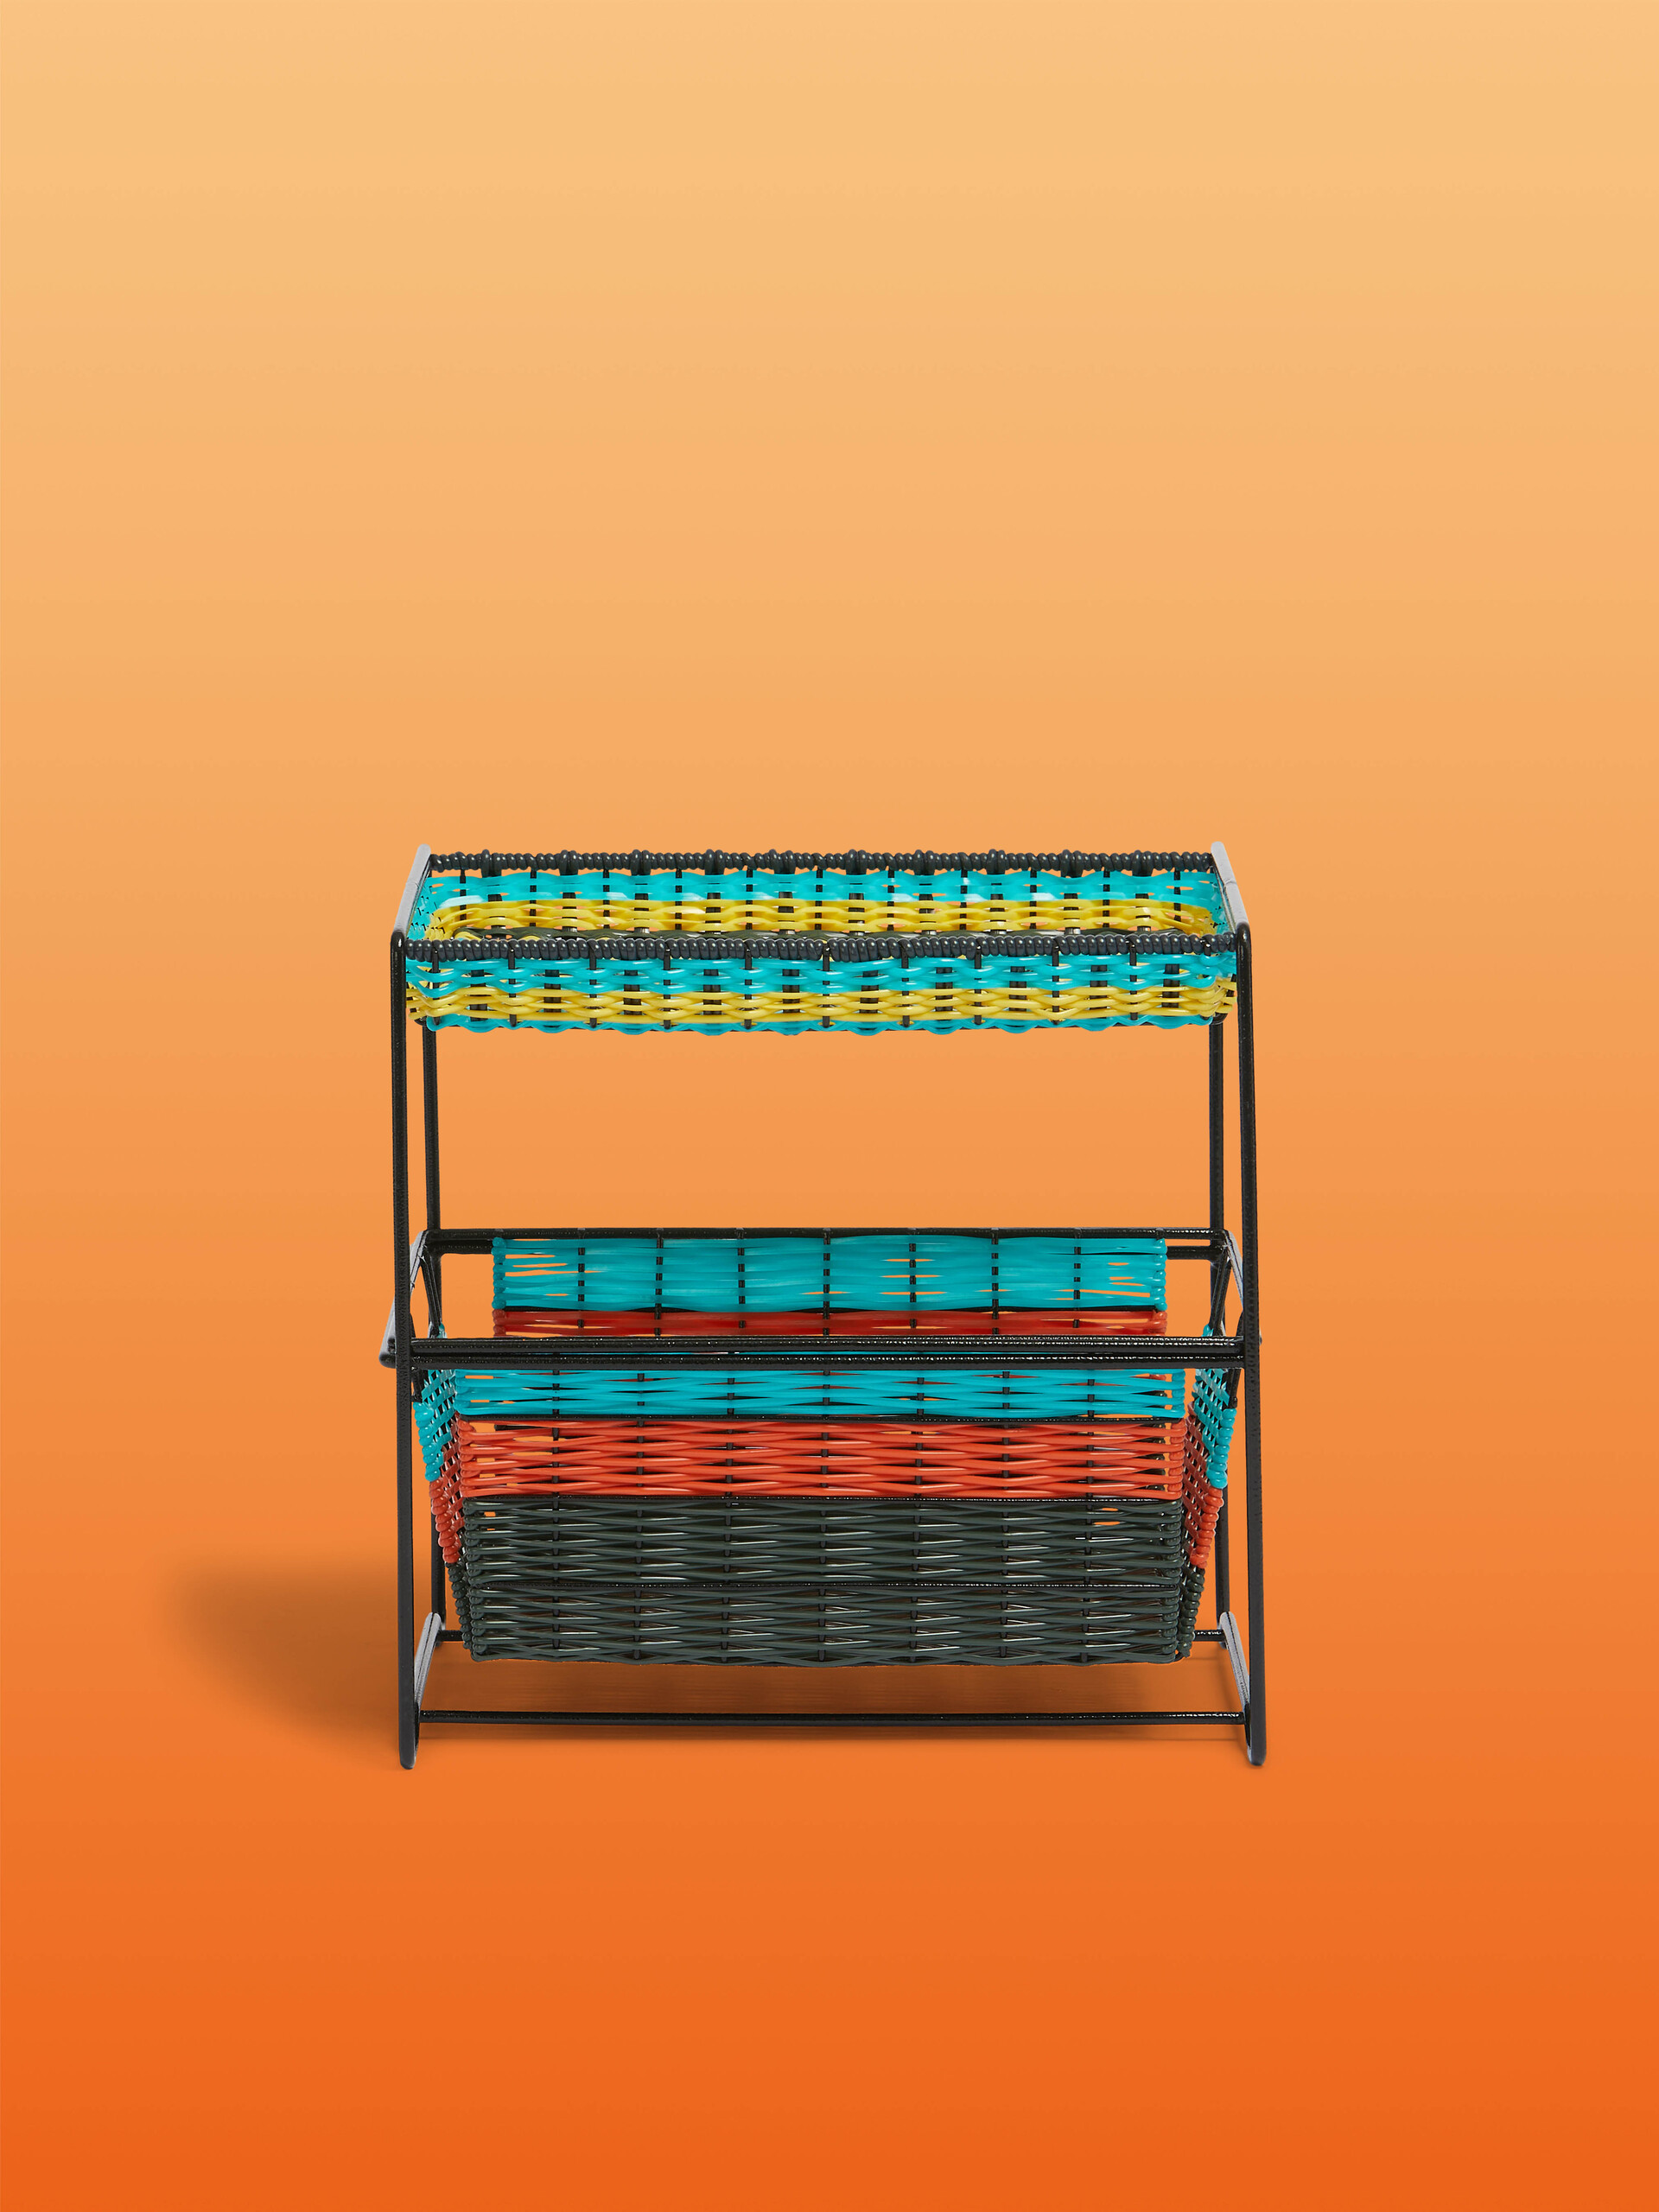 Light blue Marni Market 2-tier basket unit - Furniture - Image 1